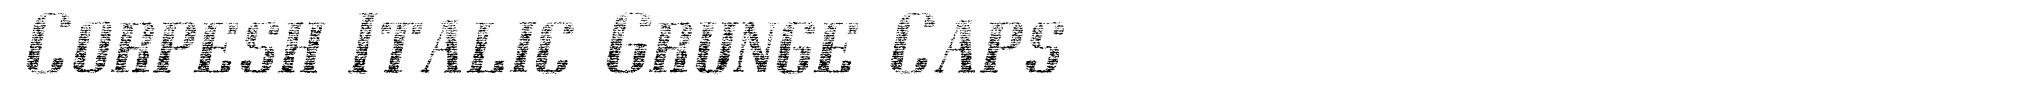 Corpesh Italic Grunge Caps image